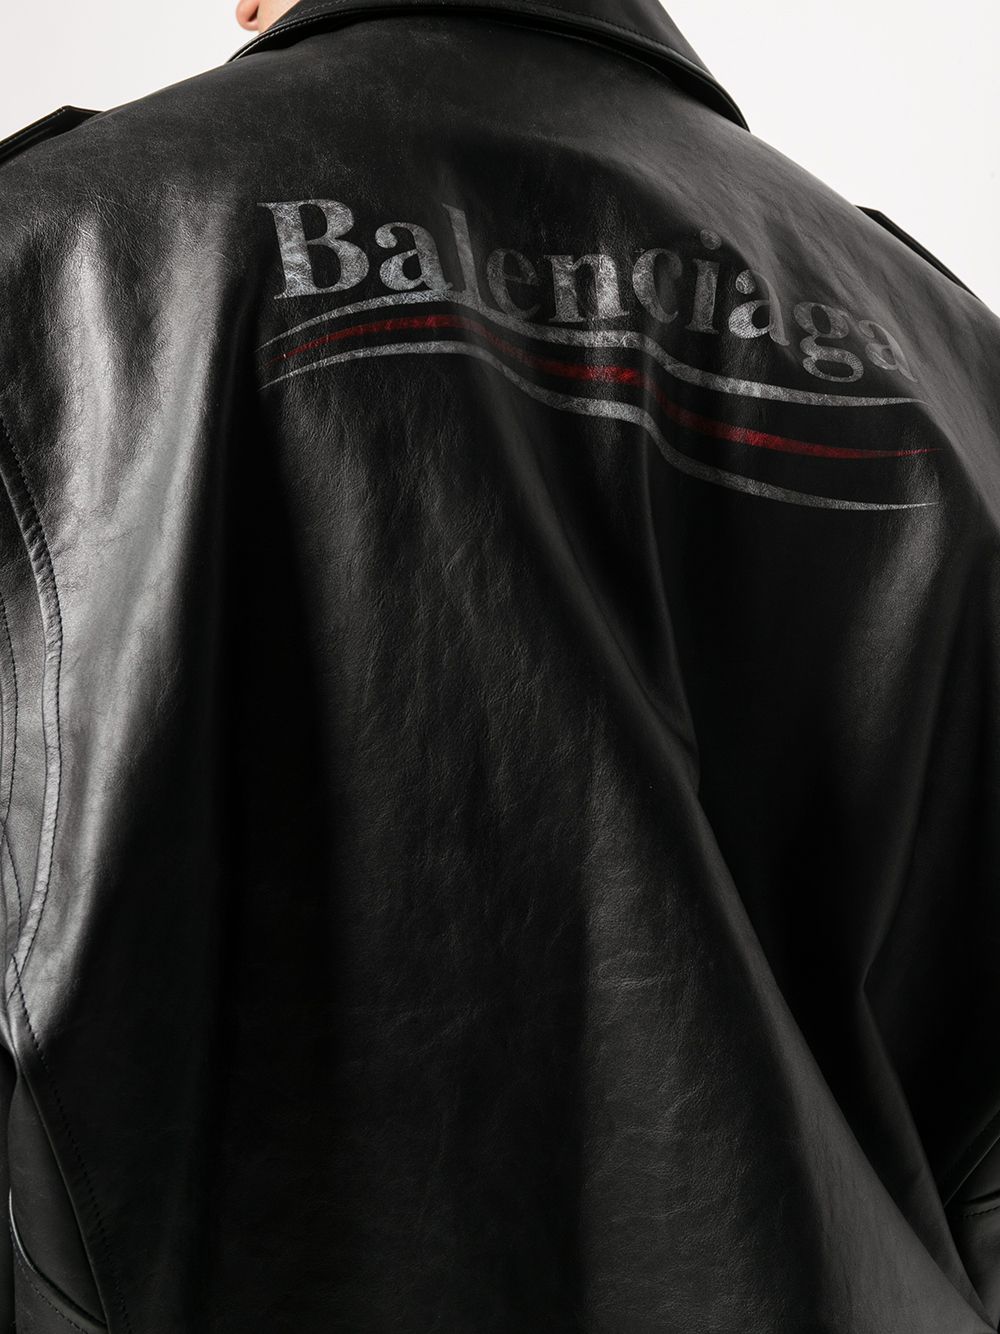 фото Balenciaga байкерская куртка с логотипом